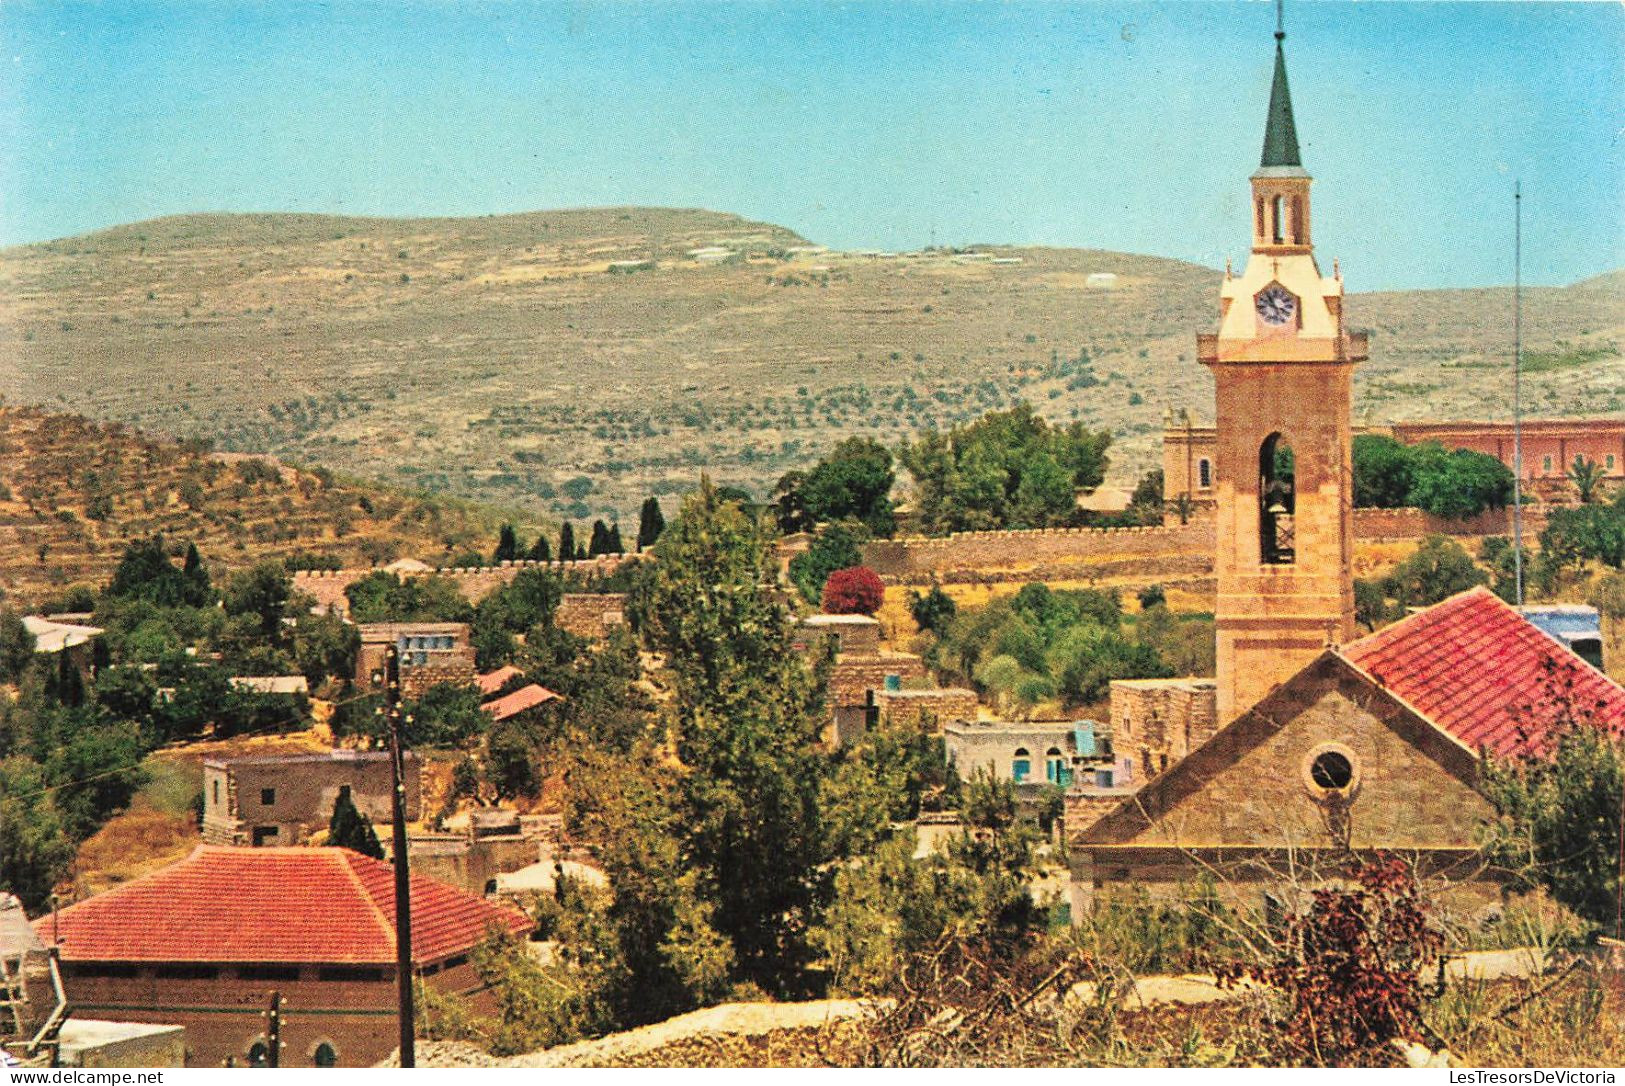 ISRAEL - Ein Kerem - Vue Générale De La Ville - Colorisé - Carte Postale - Israel